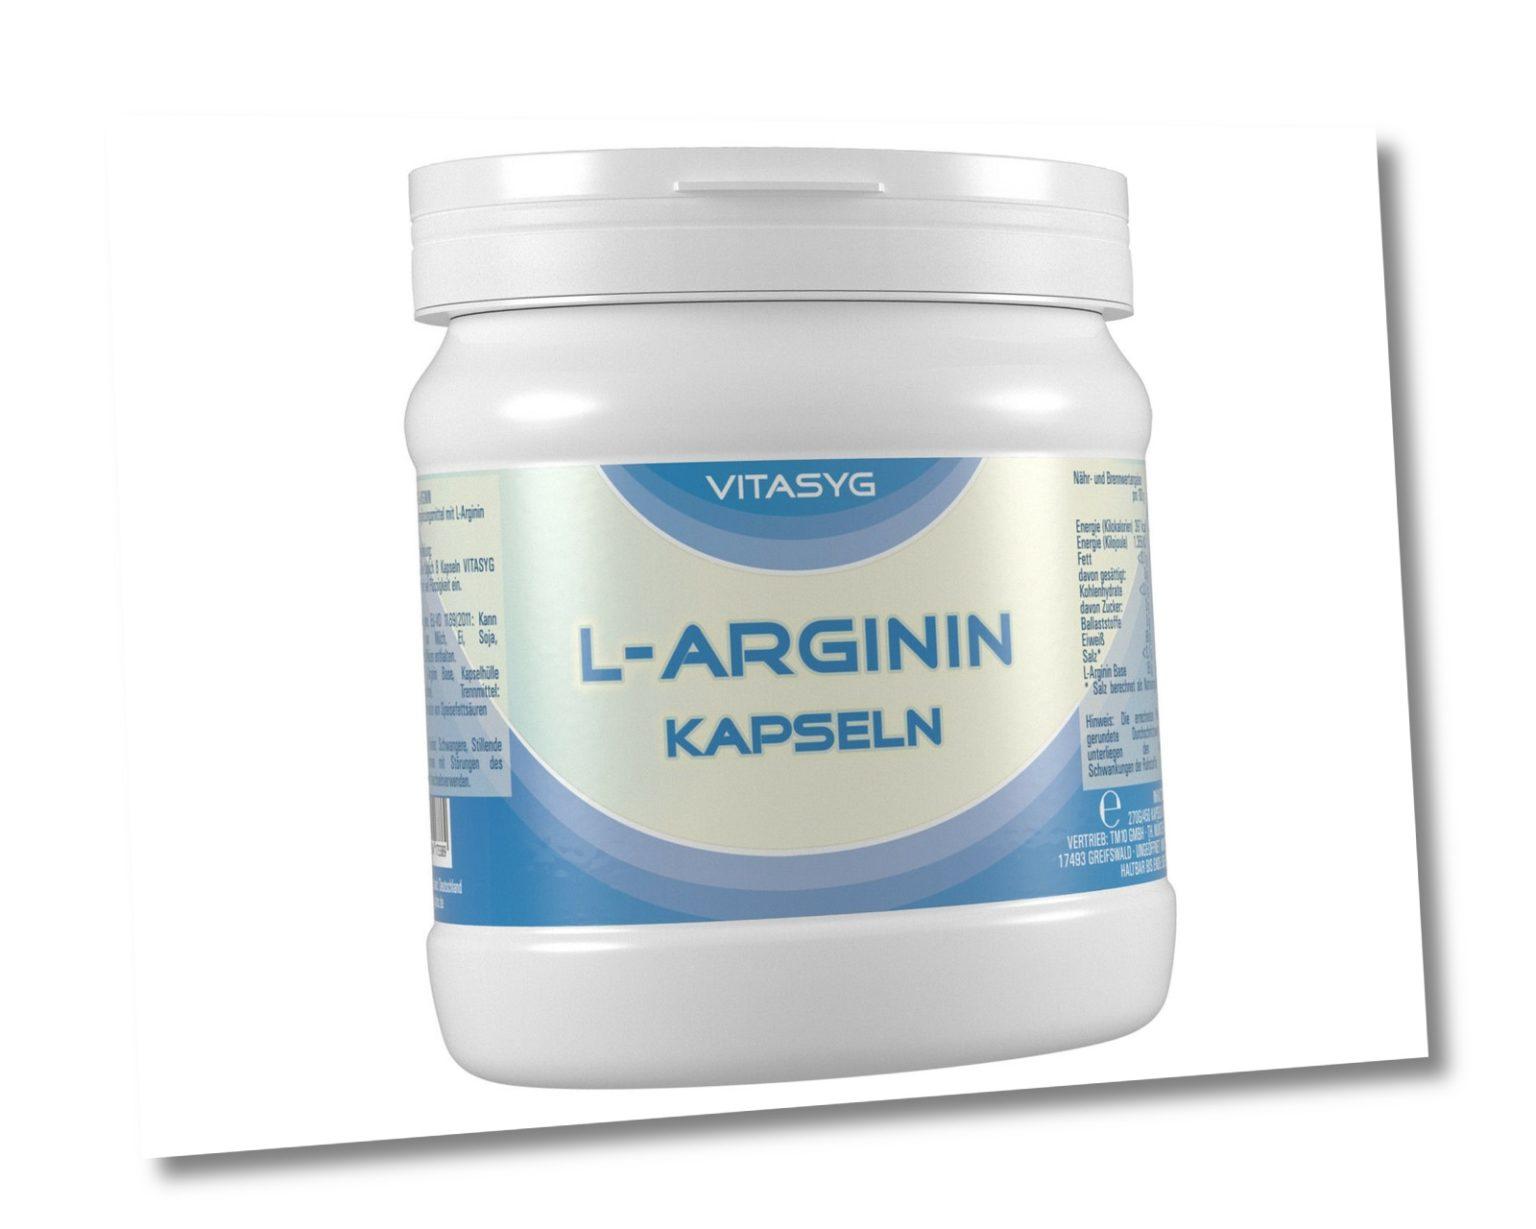 Vitasyg L-Arginin Kapseln - 450 Kapseln Aminosäure Eiweiß Protein